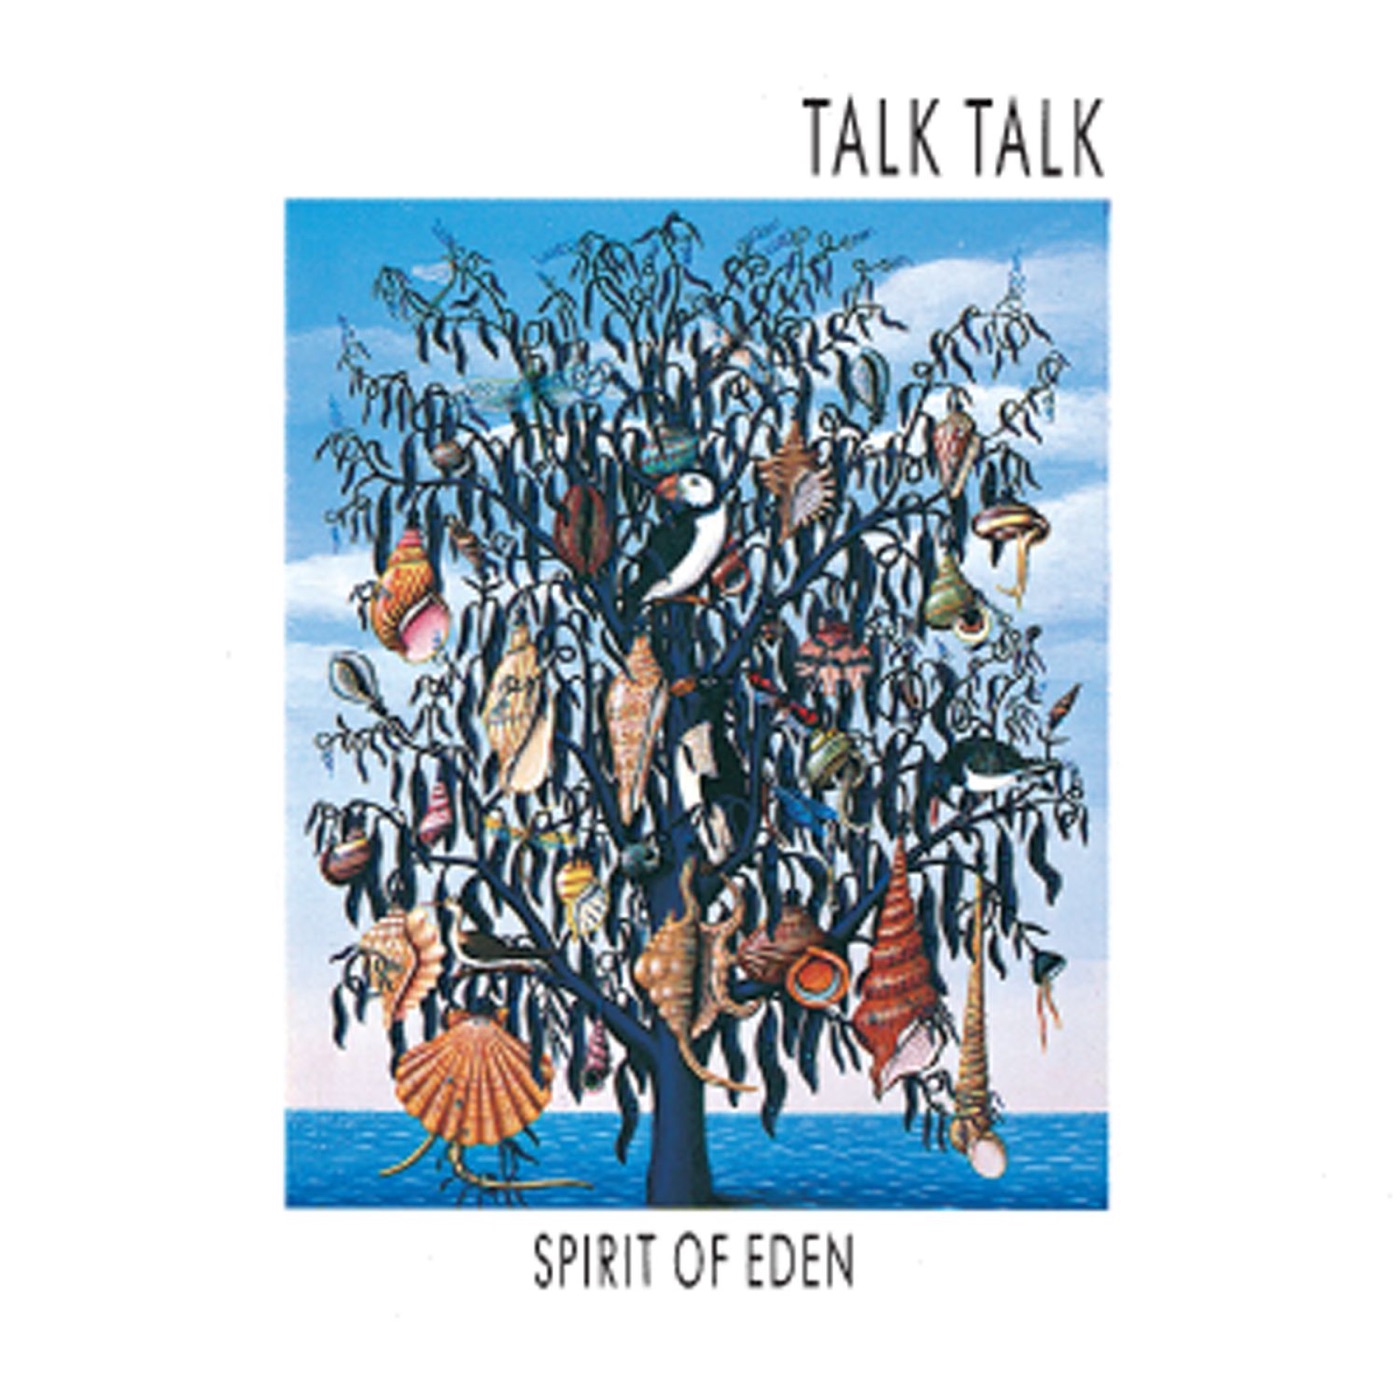 Spirit of Eden by Talk Talk